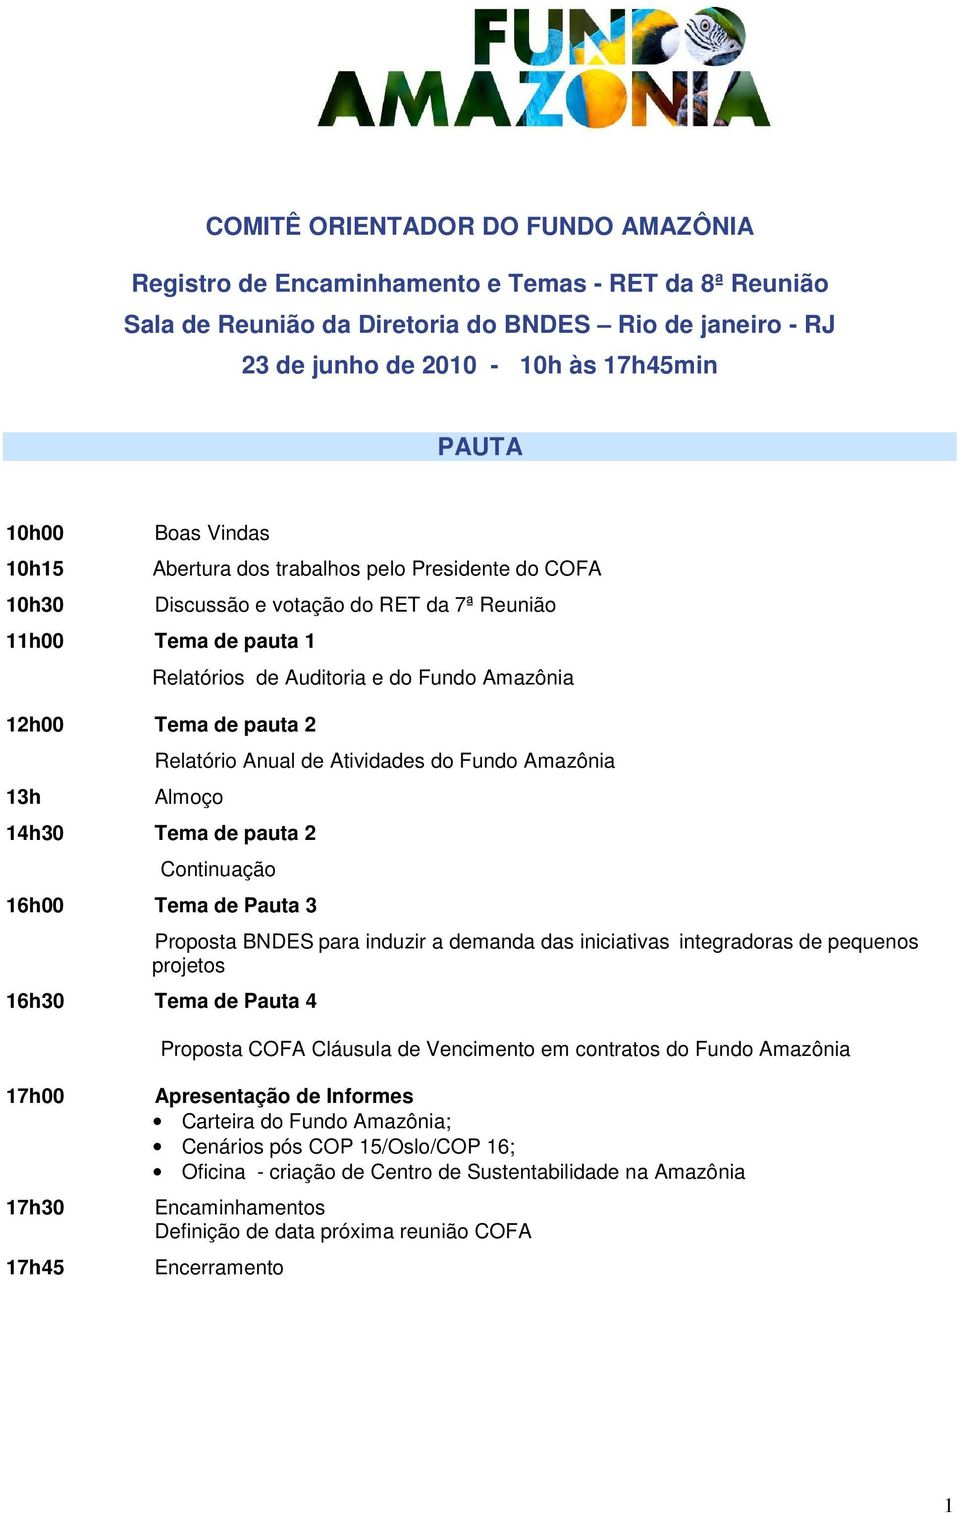 13h Relatório Anual de Atividades do Fundo Amazônia Almoço 14h30 Tema de pauta 2 Continuação 16h00 Tema de Pauta 3 Proposta BNDES para induzir a demanda das iniciativas integradoras de pequenos